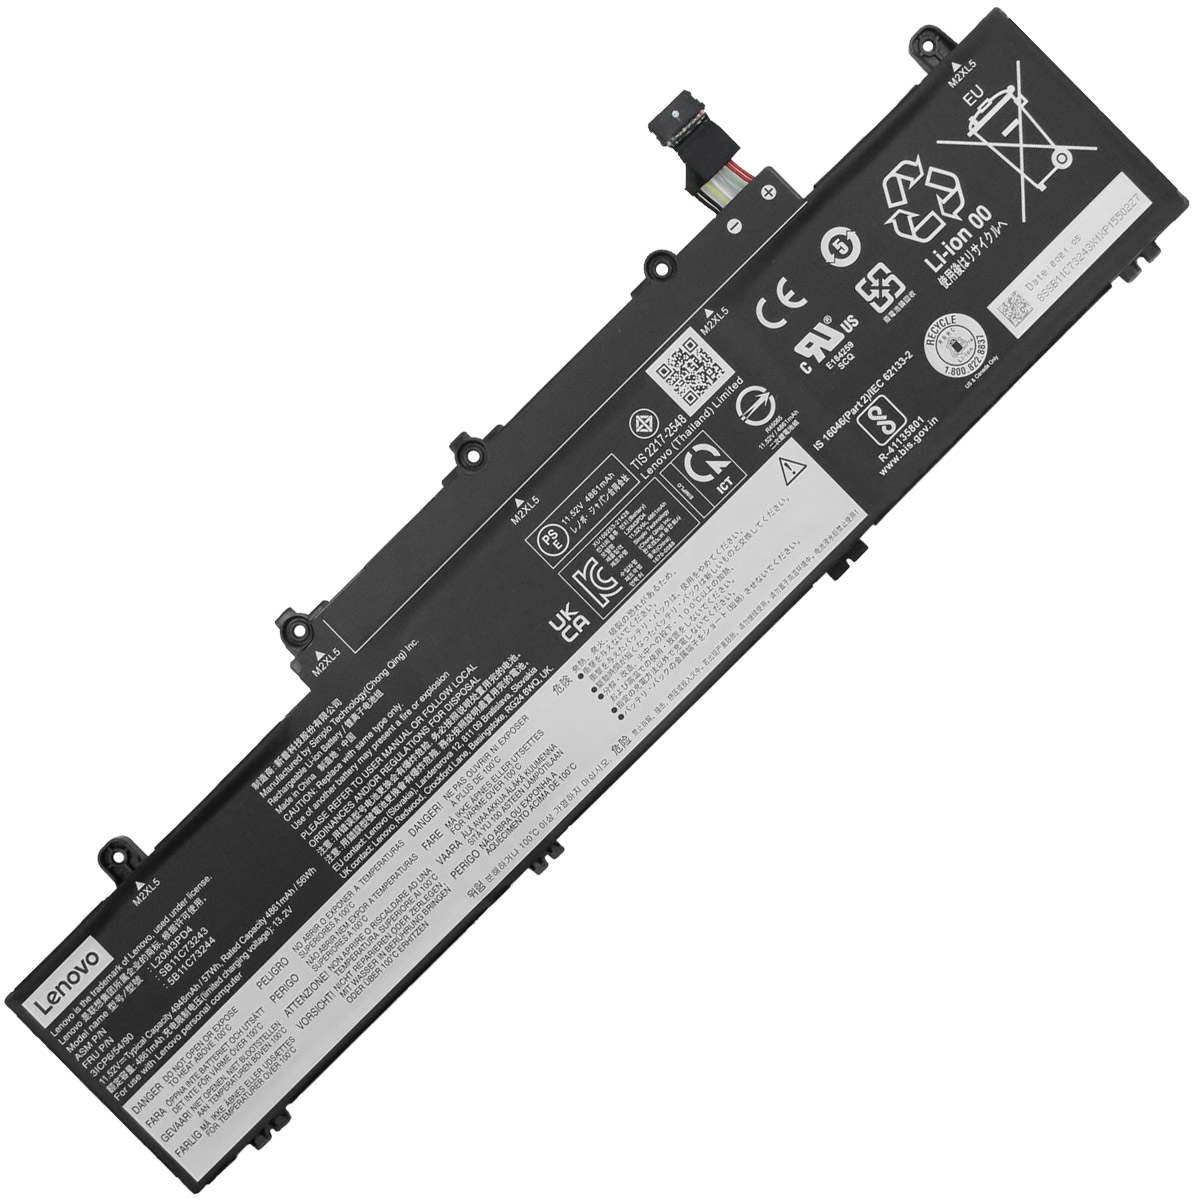 LENOVO-L20M3PD4/L20C3PD4-Laptop Replacement Battery